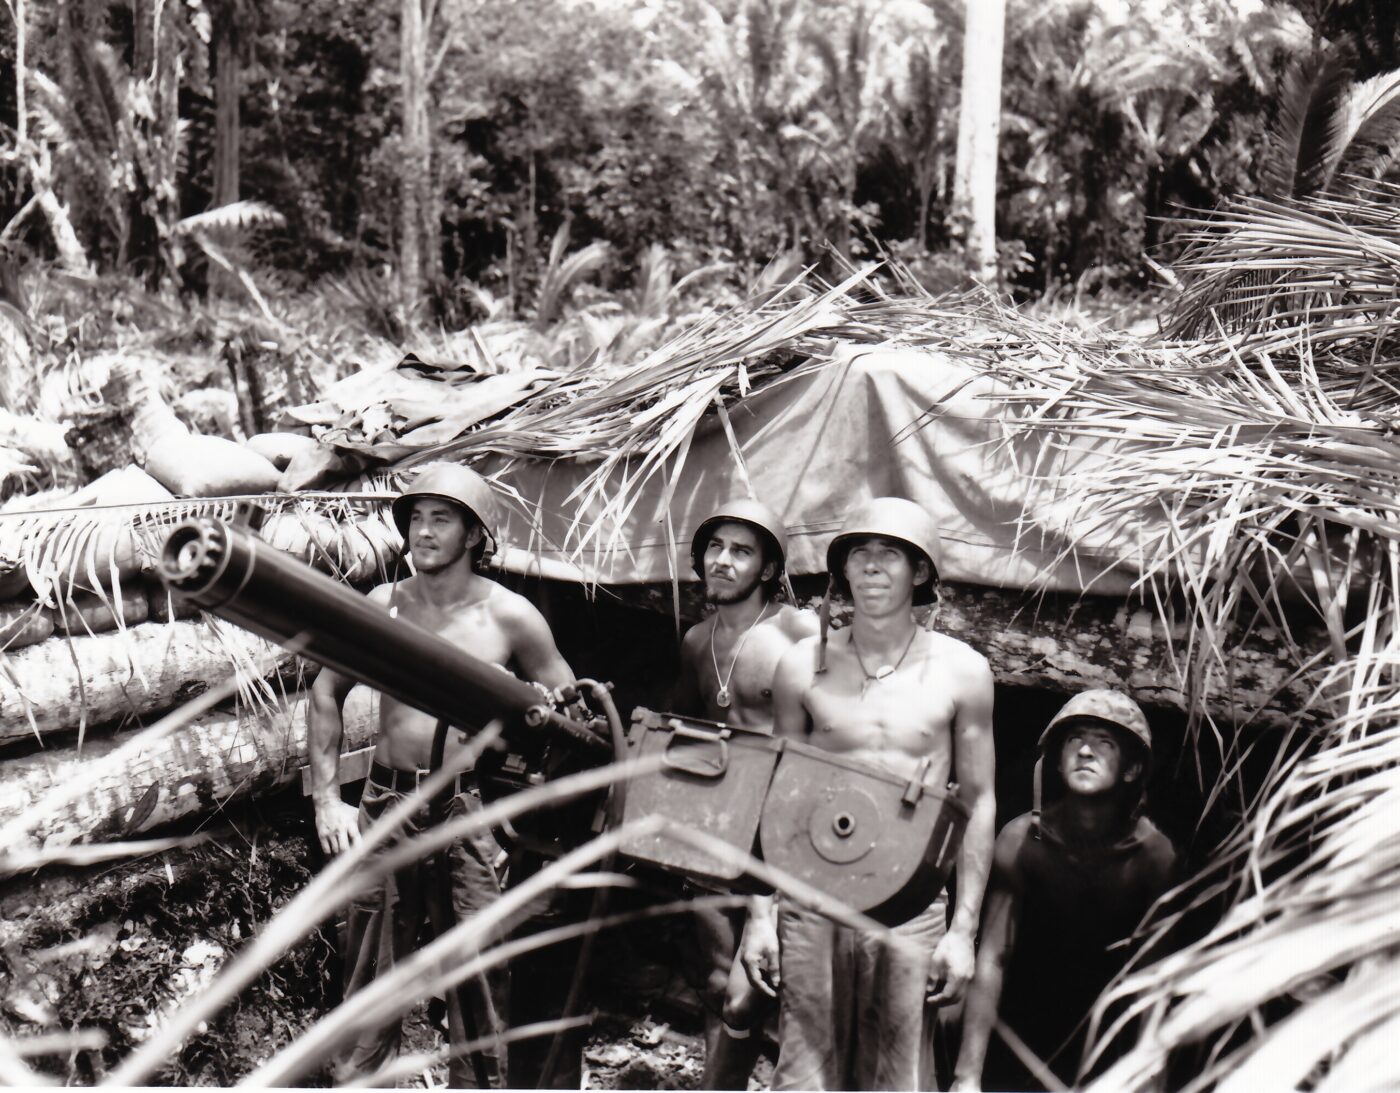 50 cal gun run by USMC in Solomon Islands campaign